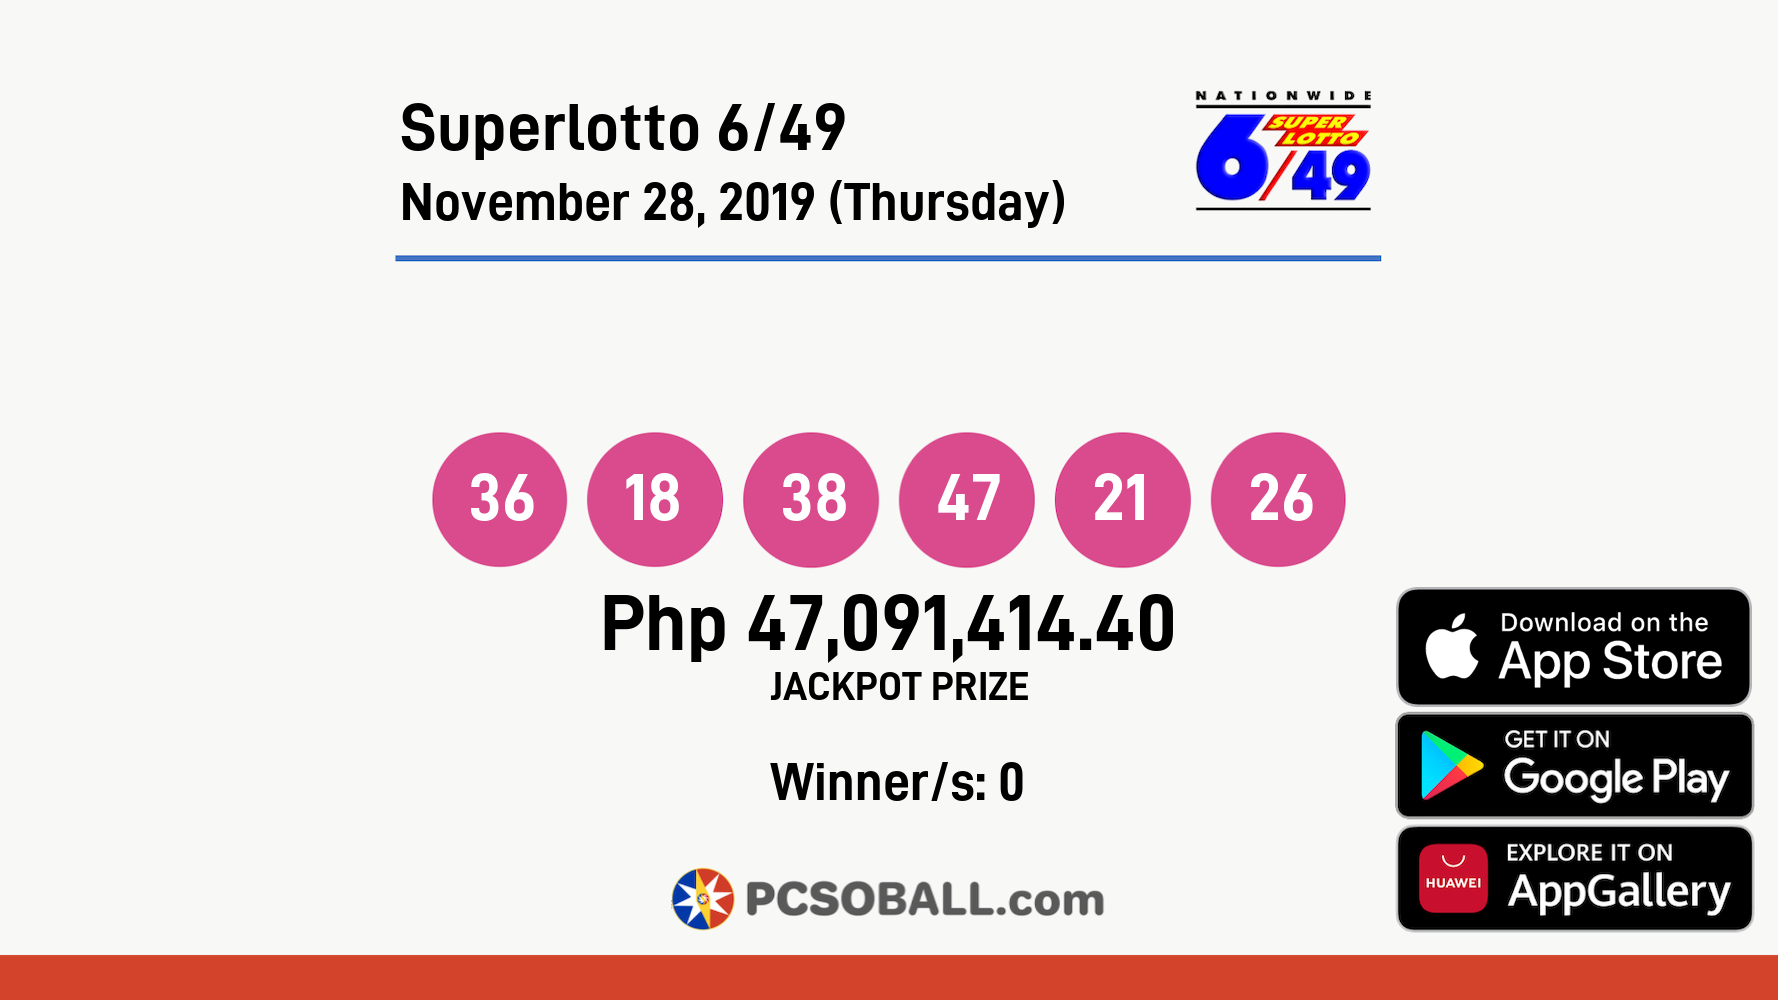 Superlotto 6/49 November 28, 2019 (Thursday) Result